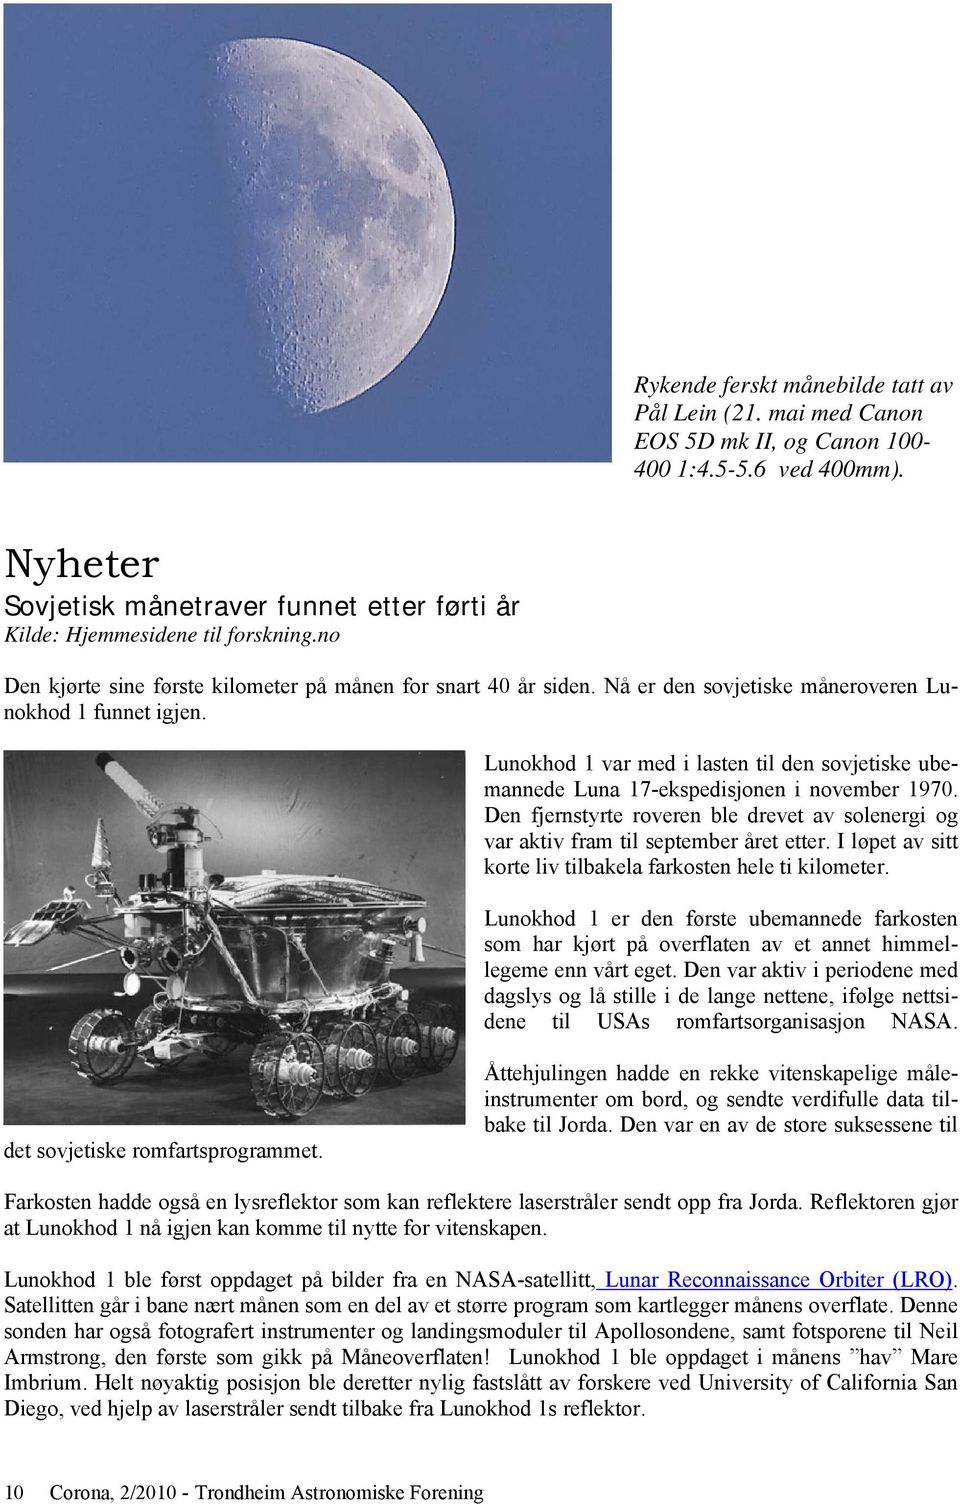 Lunokhod 1 var med i lasten til den sovjetiske ubemannede Luna 17-ekspedisjonen i november 1970. Den fjernstyrte roveren ble drevet av solenergi og var aktiv fram til september året etter.